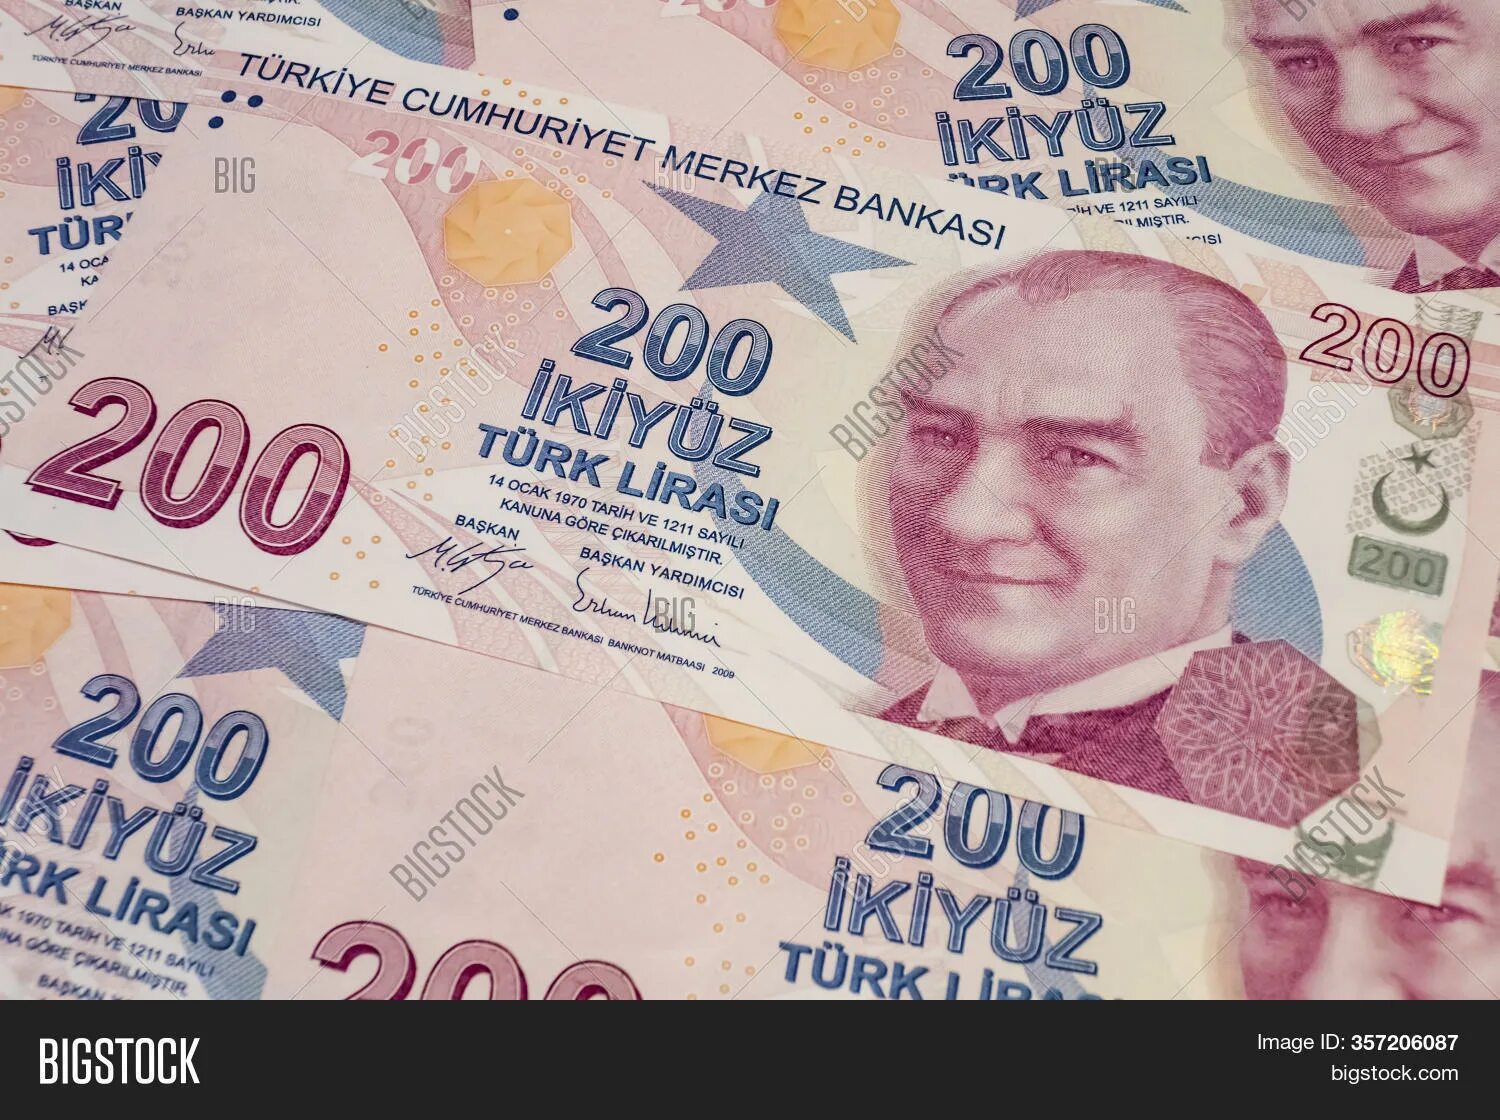 200 турецких в рублях. 200 Турецких лир. 1700 Лир в рублях на сегодня. 200 Лир бумажные человек на Бушке.